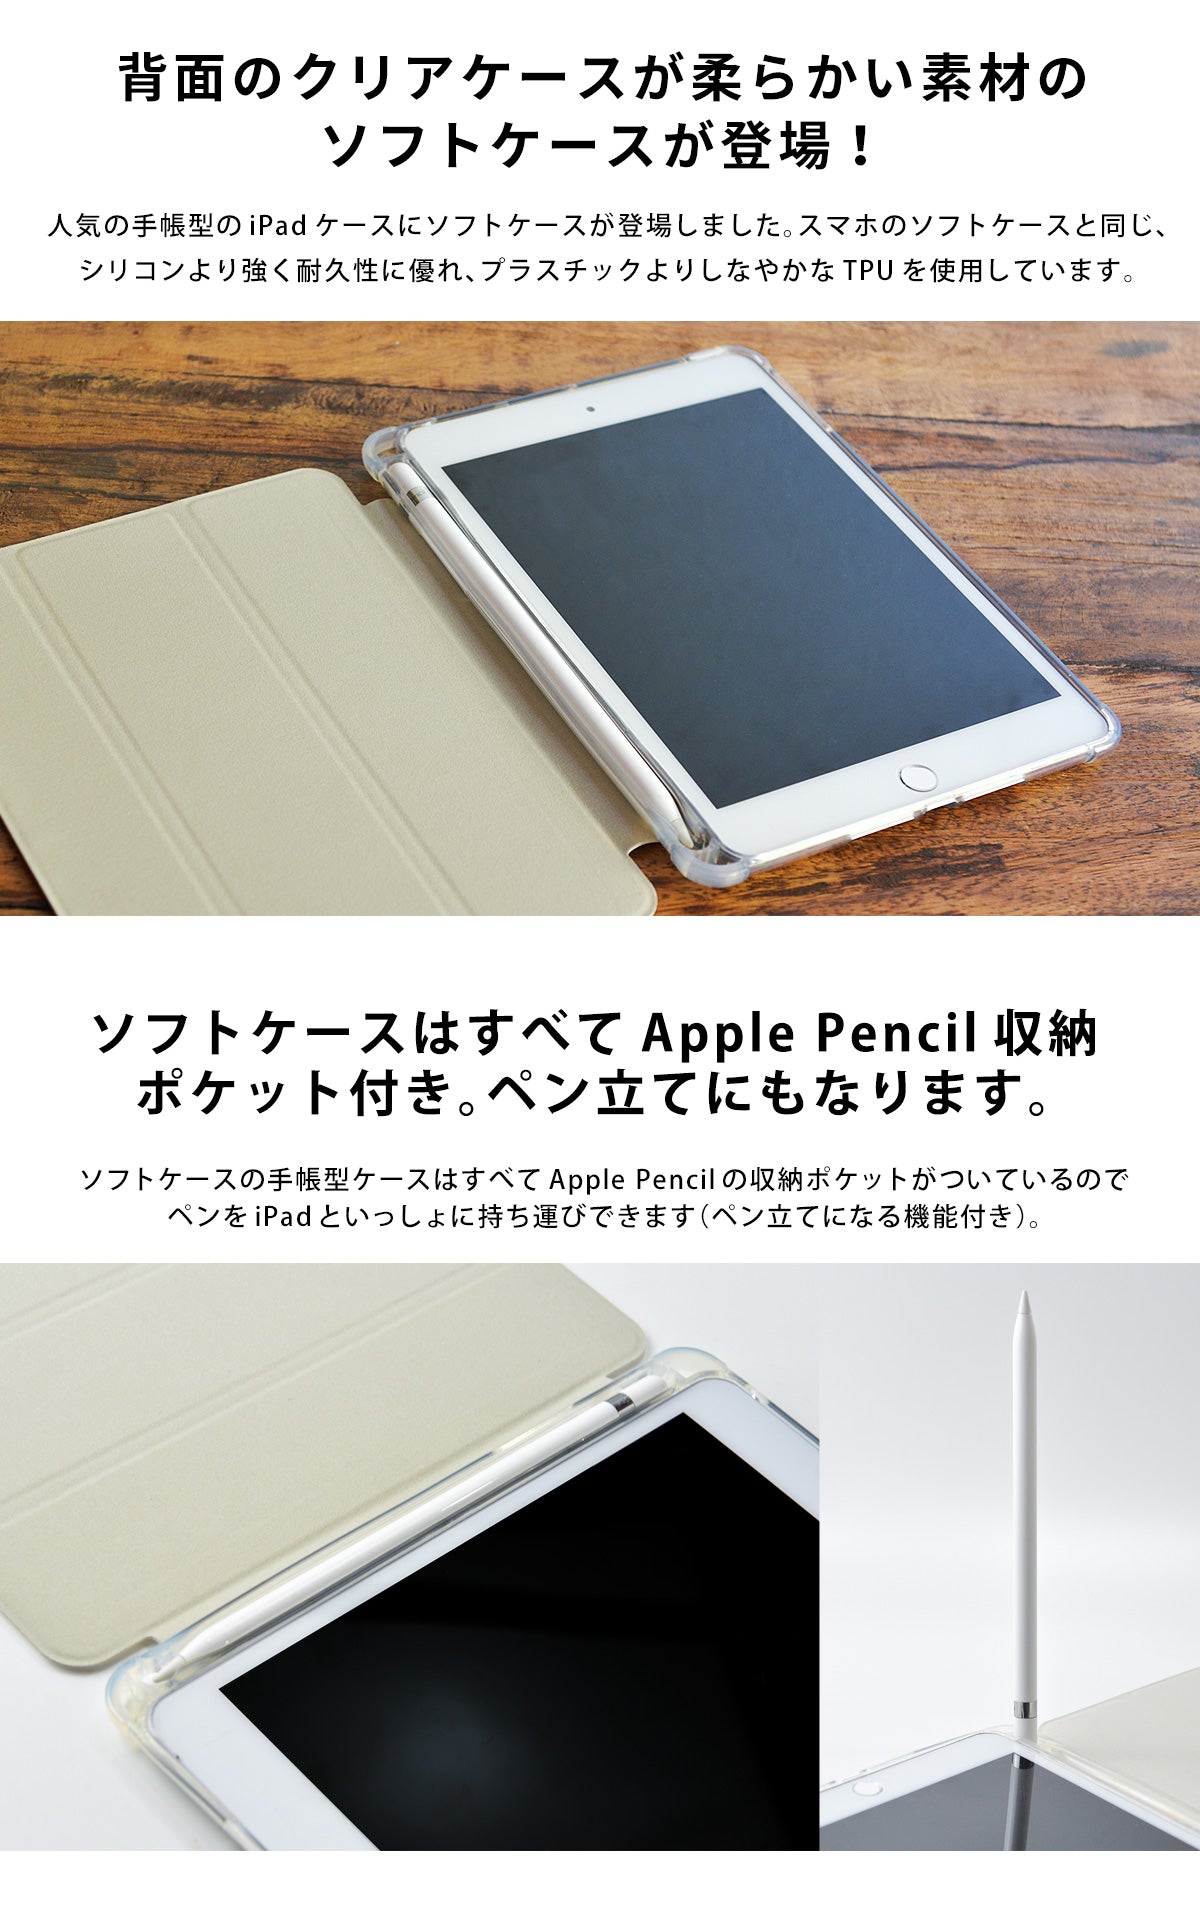 iPadケースにソフトケースが登場。ApplePencil収納ポケット付き。ペン立てにもなります。